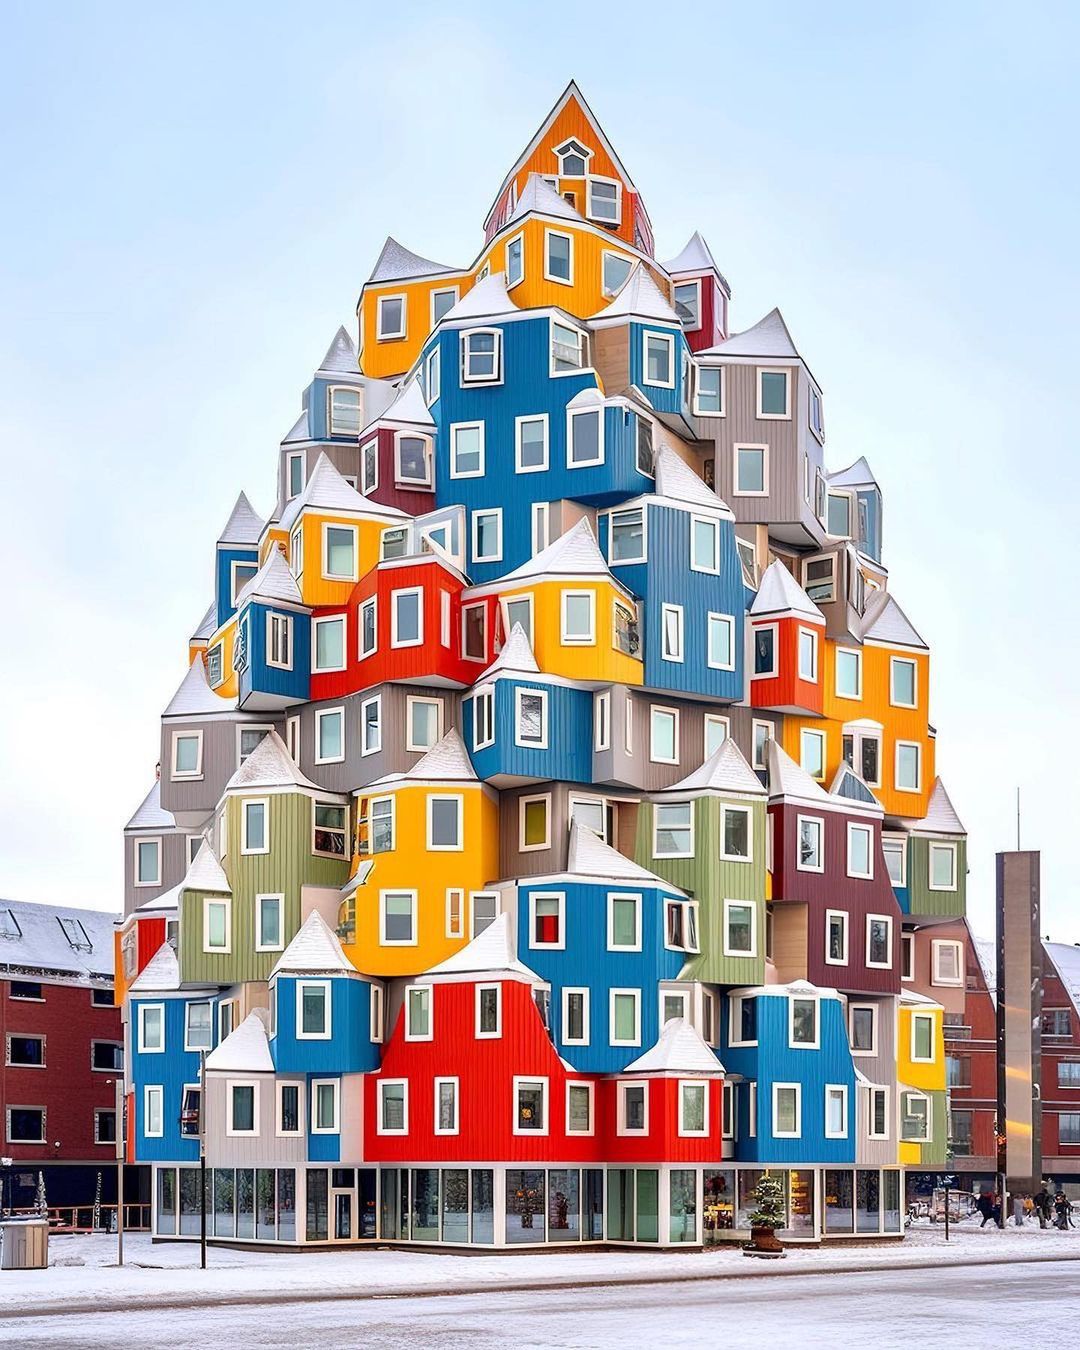 Les maisons d’Amsterdam parées d’un charme fantaisiste, inspirées par les habitations enchanteresses et éclectiques de Zaandam